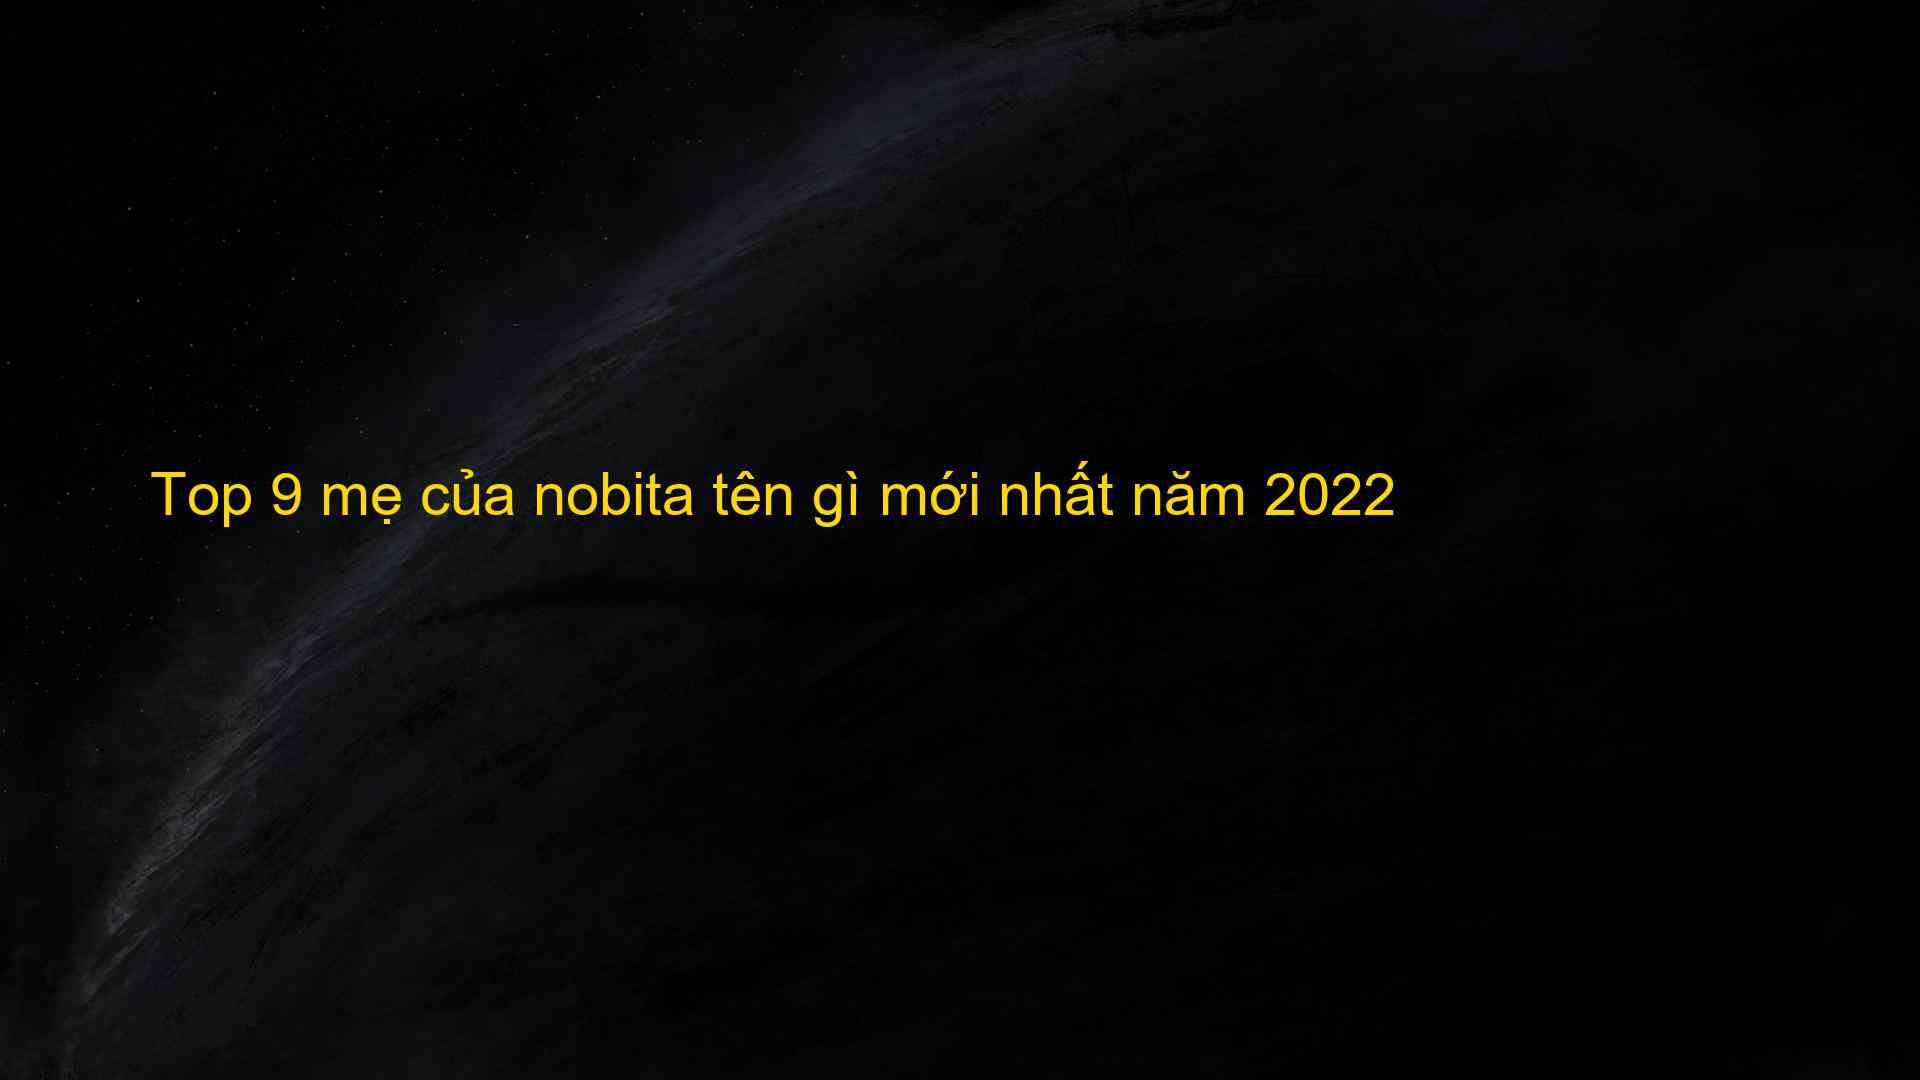 Top 9 mẹ của nobita tên gì mới nhất năm 2022 - Máy Ép Cám Nổi | Dây Chuyền Sản Xuất Thức Ăn Thủy Sản Tối Ưu